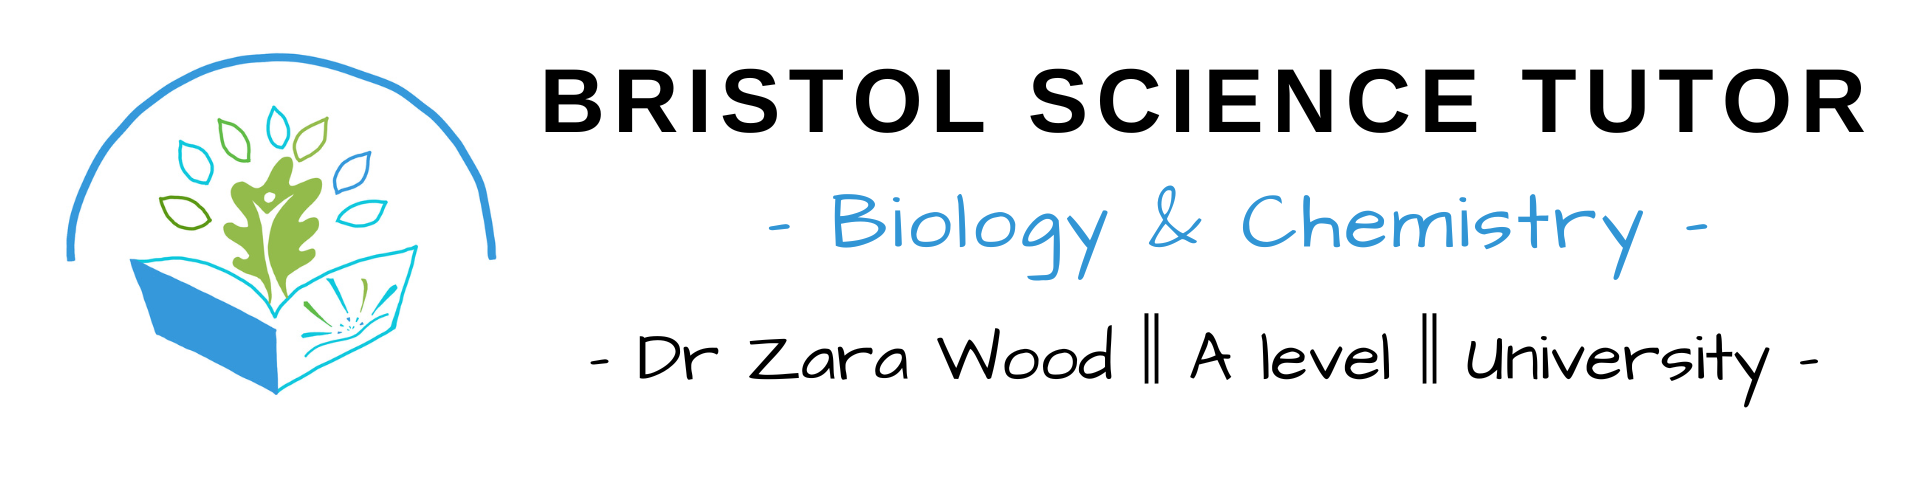 Bristol Science Tutor Logo